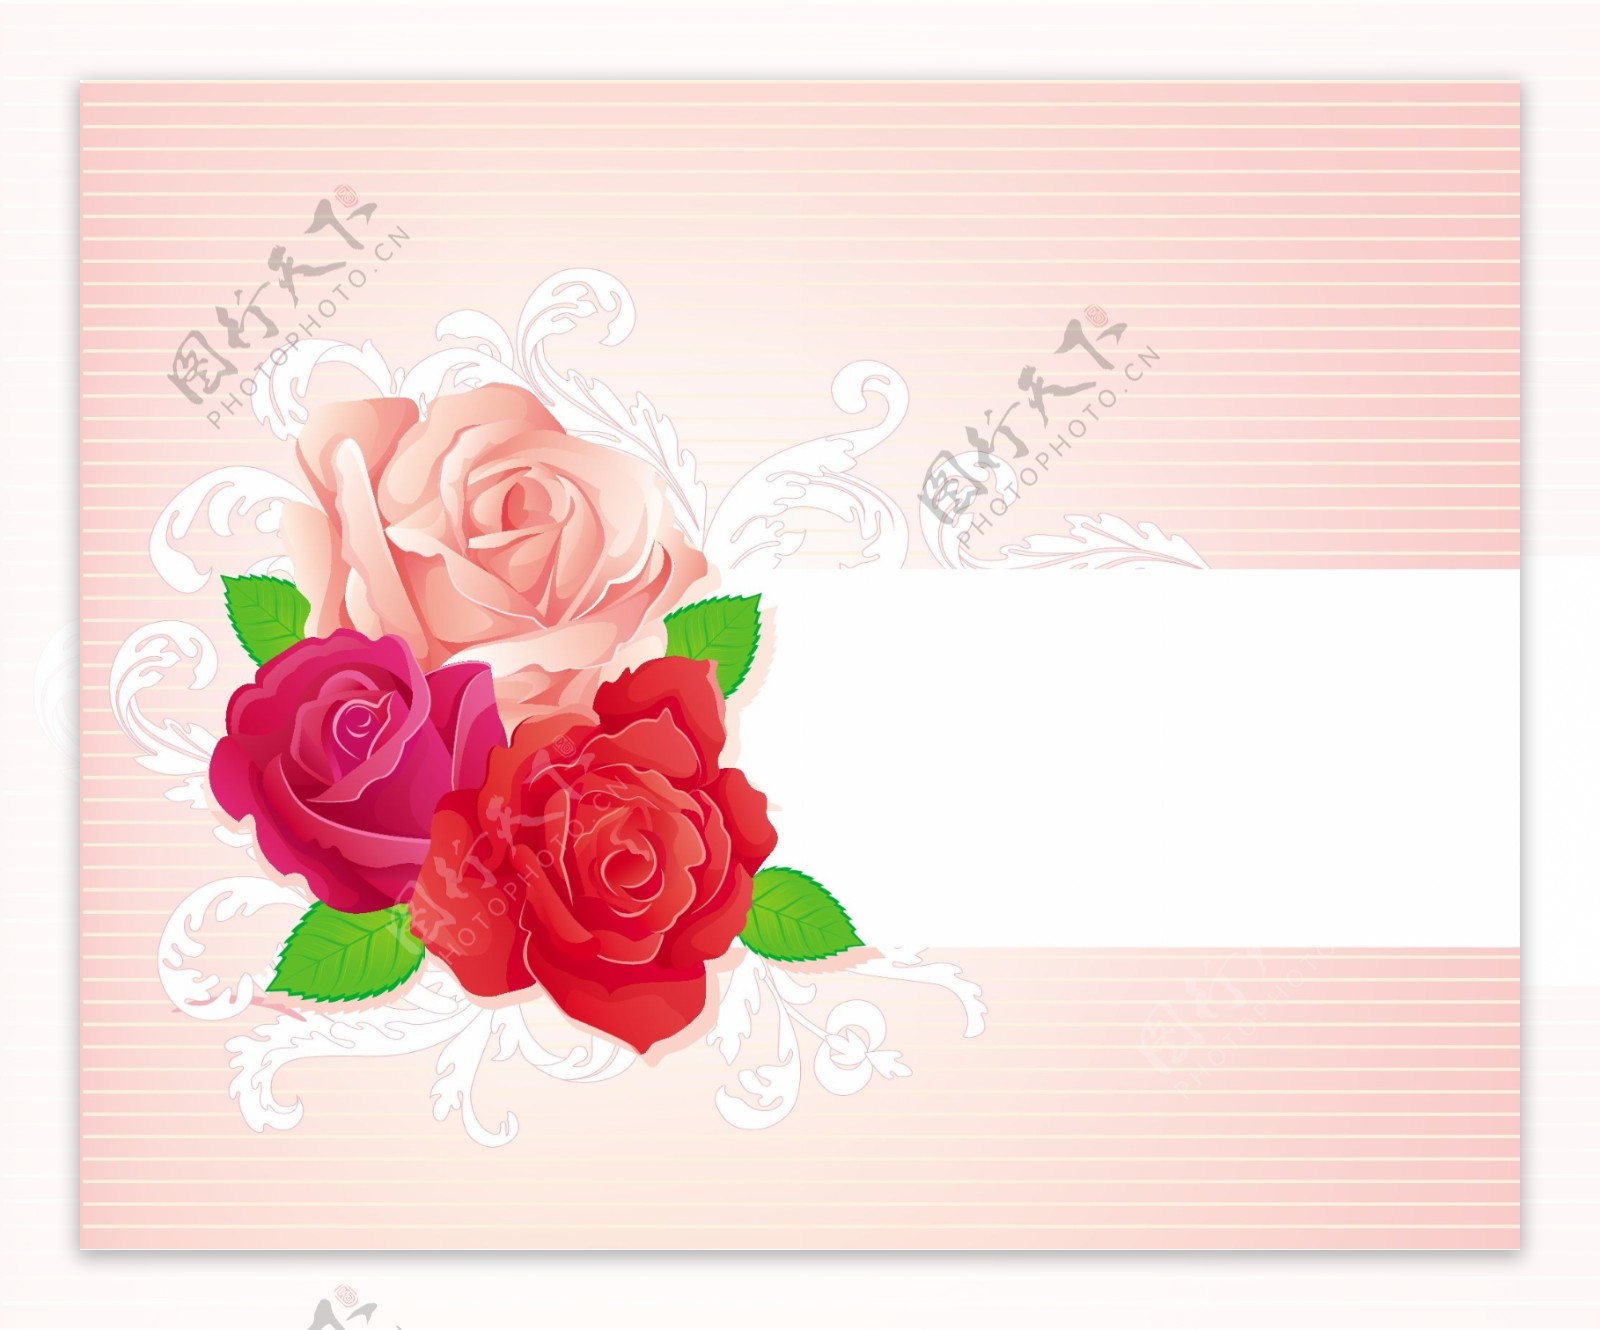 粉色三朵浪漫玫瑰gif动图_动态图_表情包下载_soogif - 动态图库网